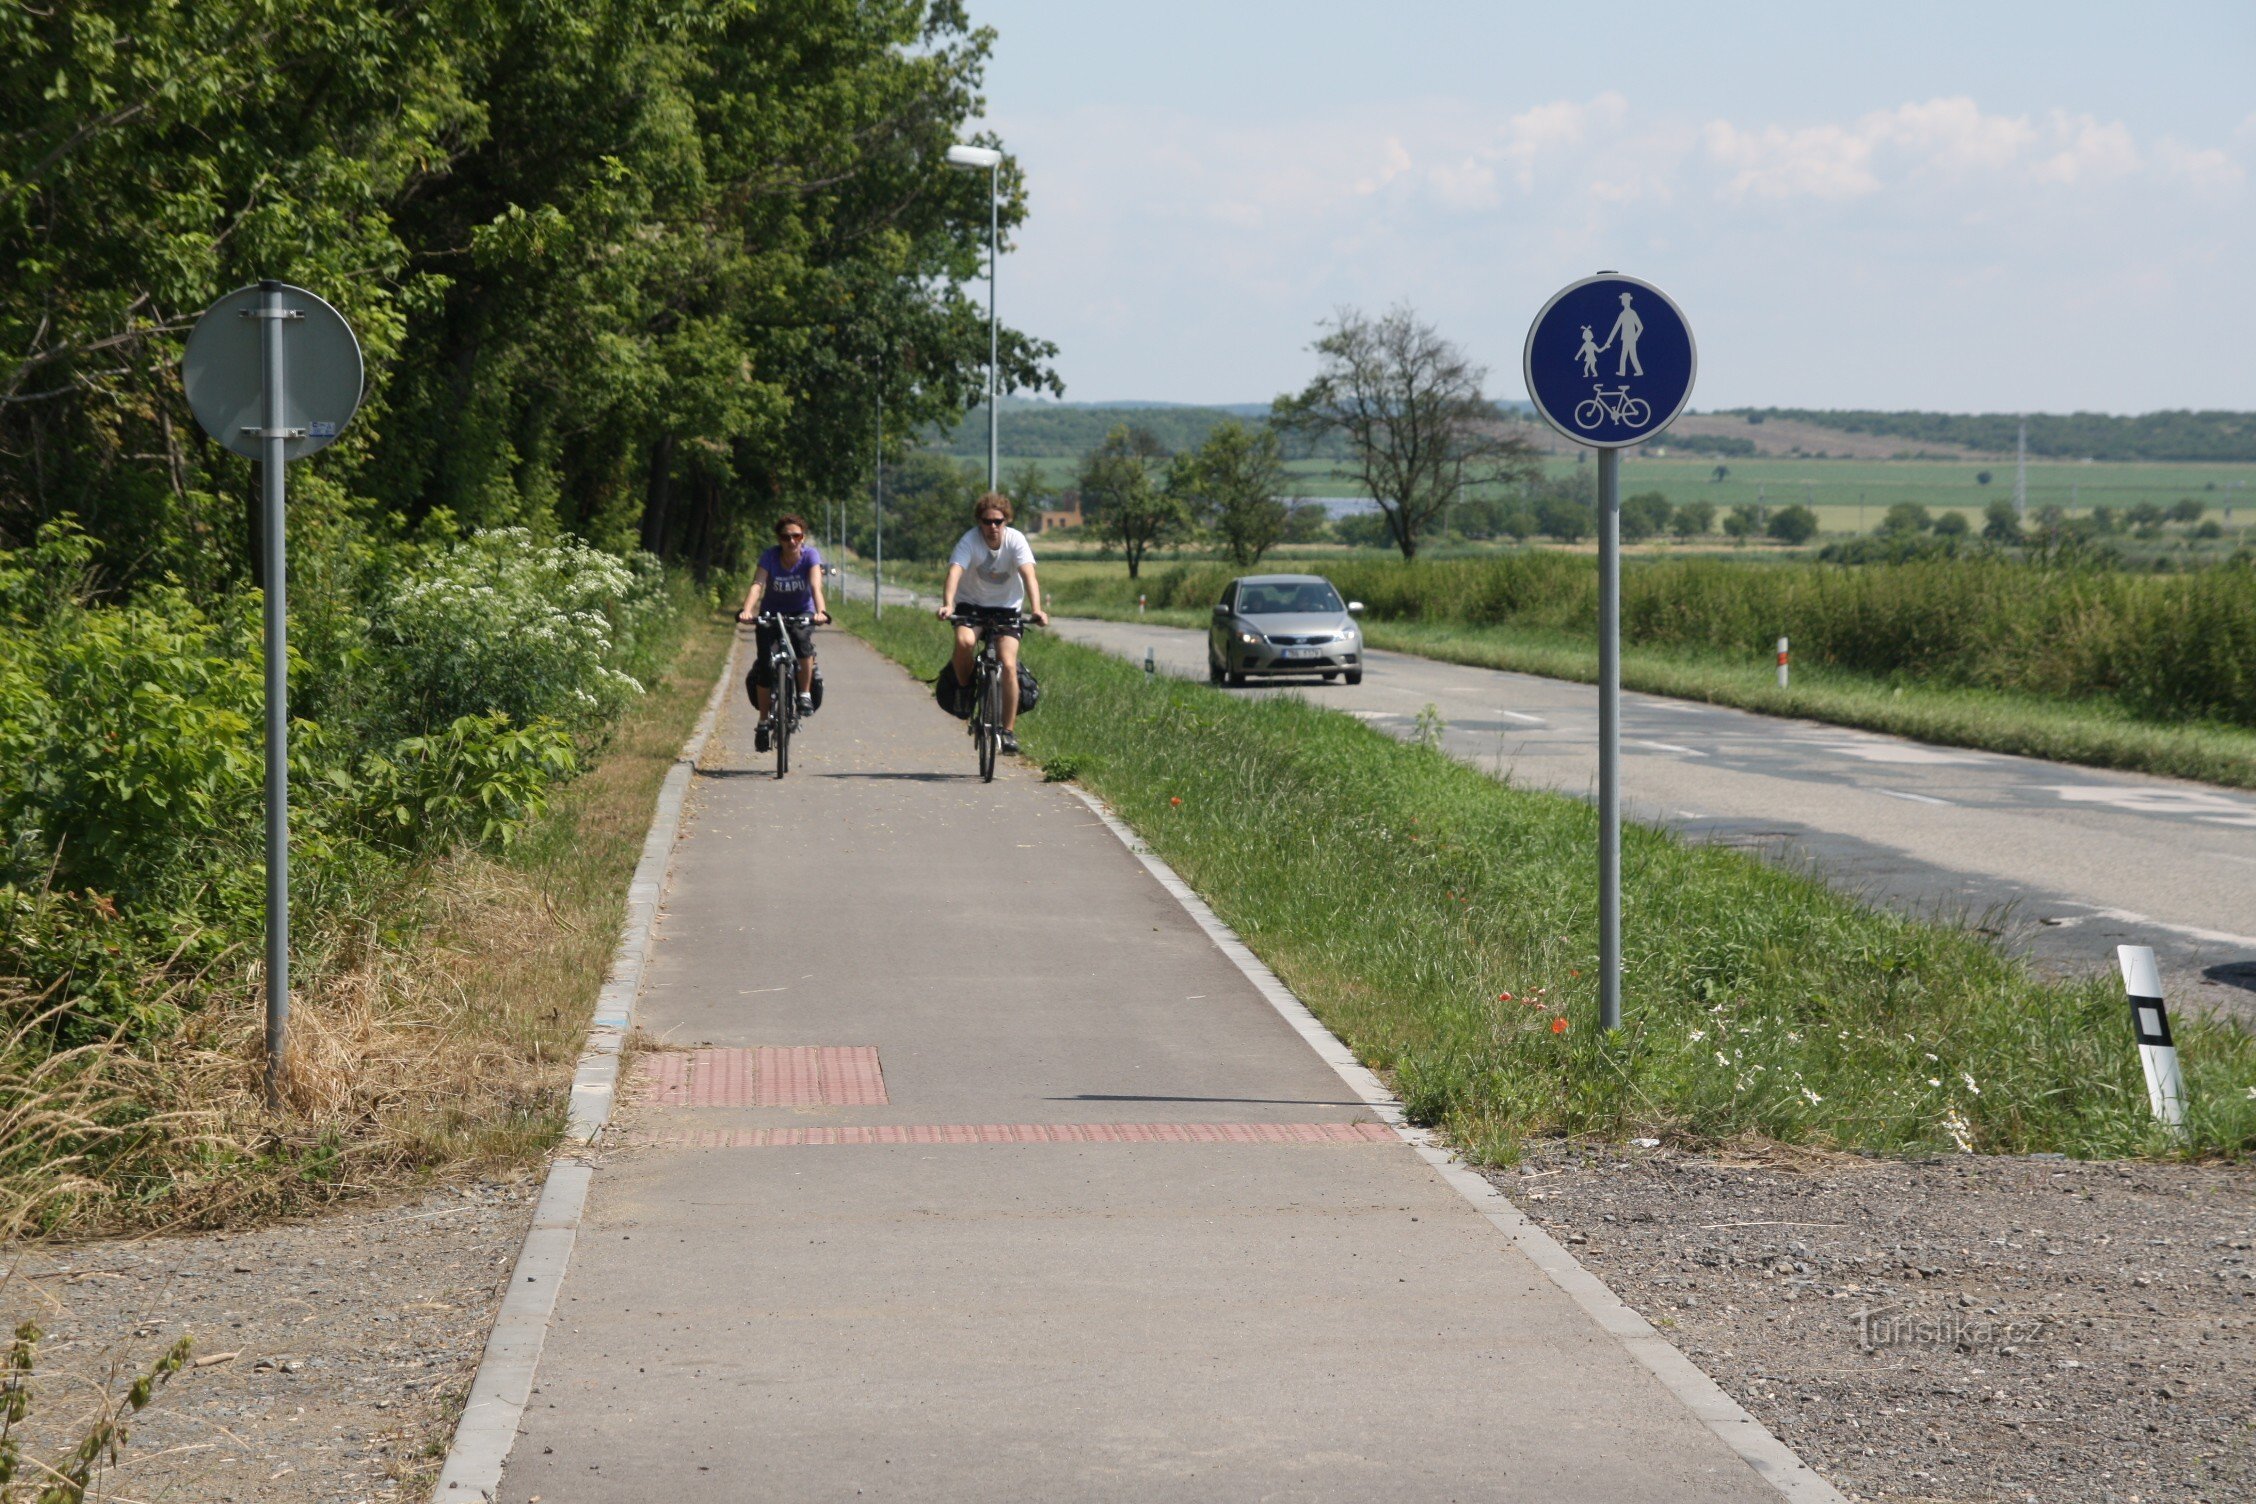 Ход велосипедной дорожки, идущей параллельно дороге